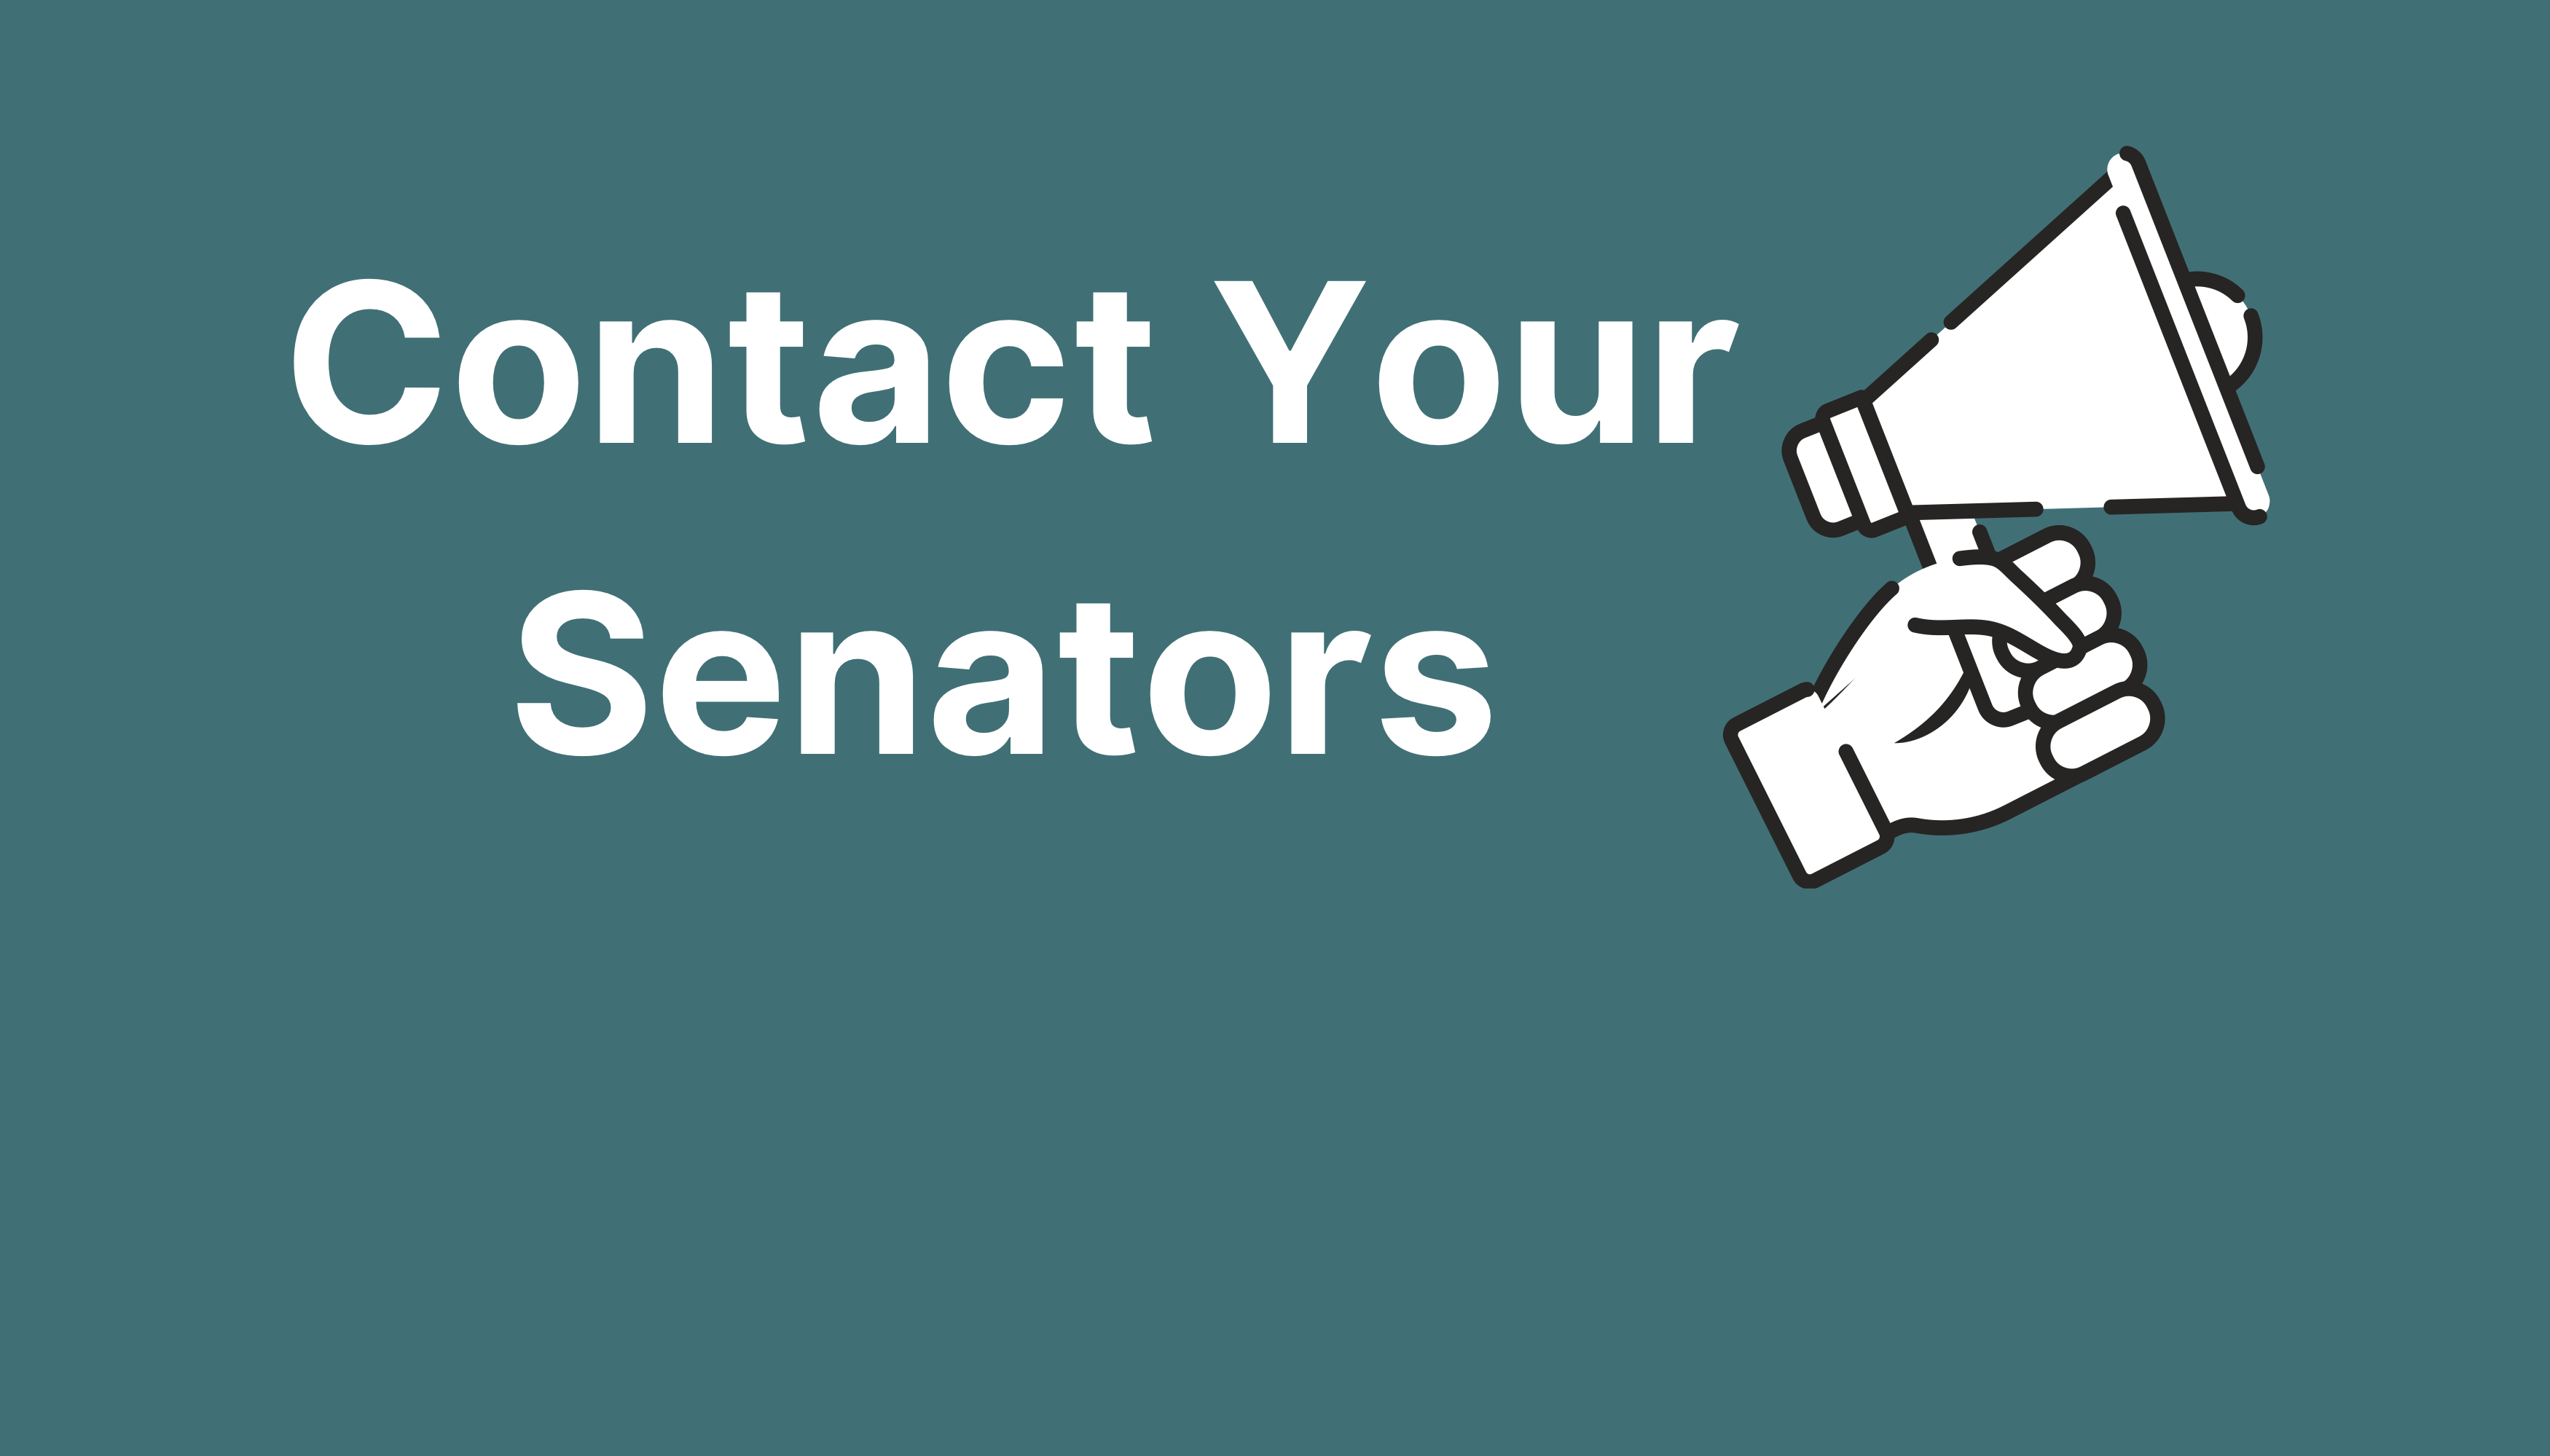 Contact Your Senators